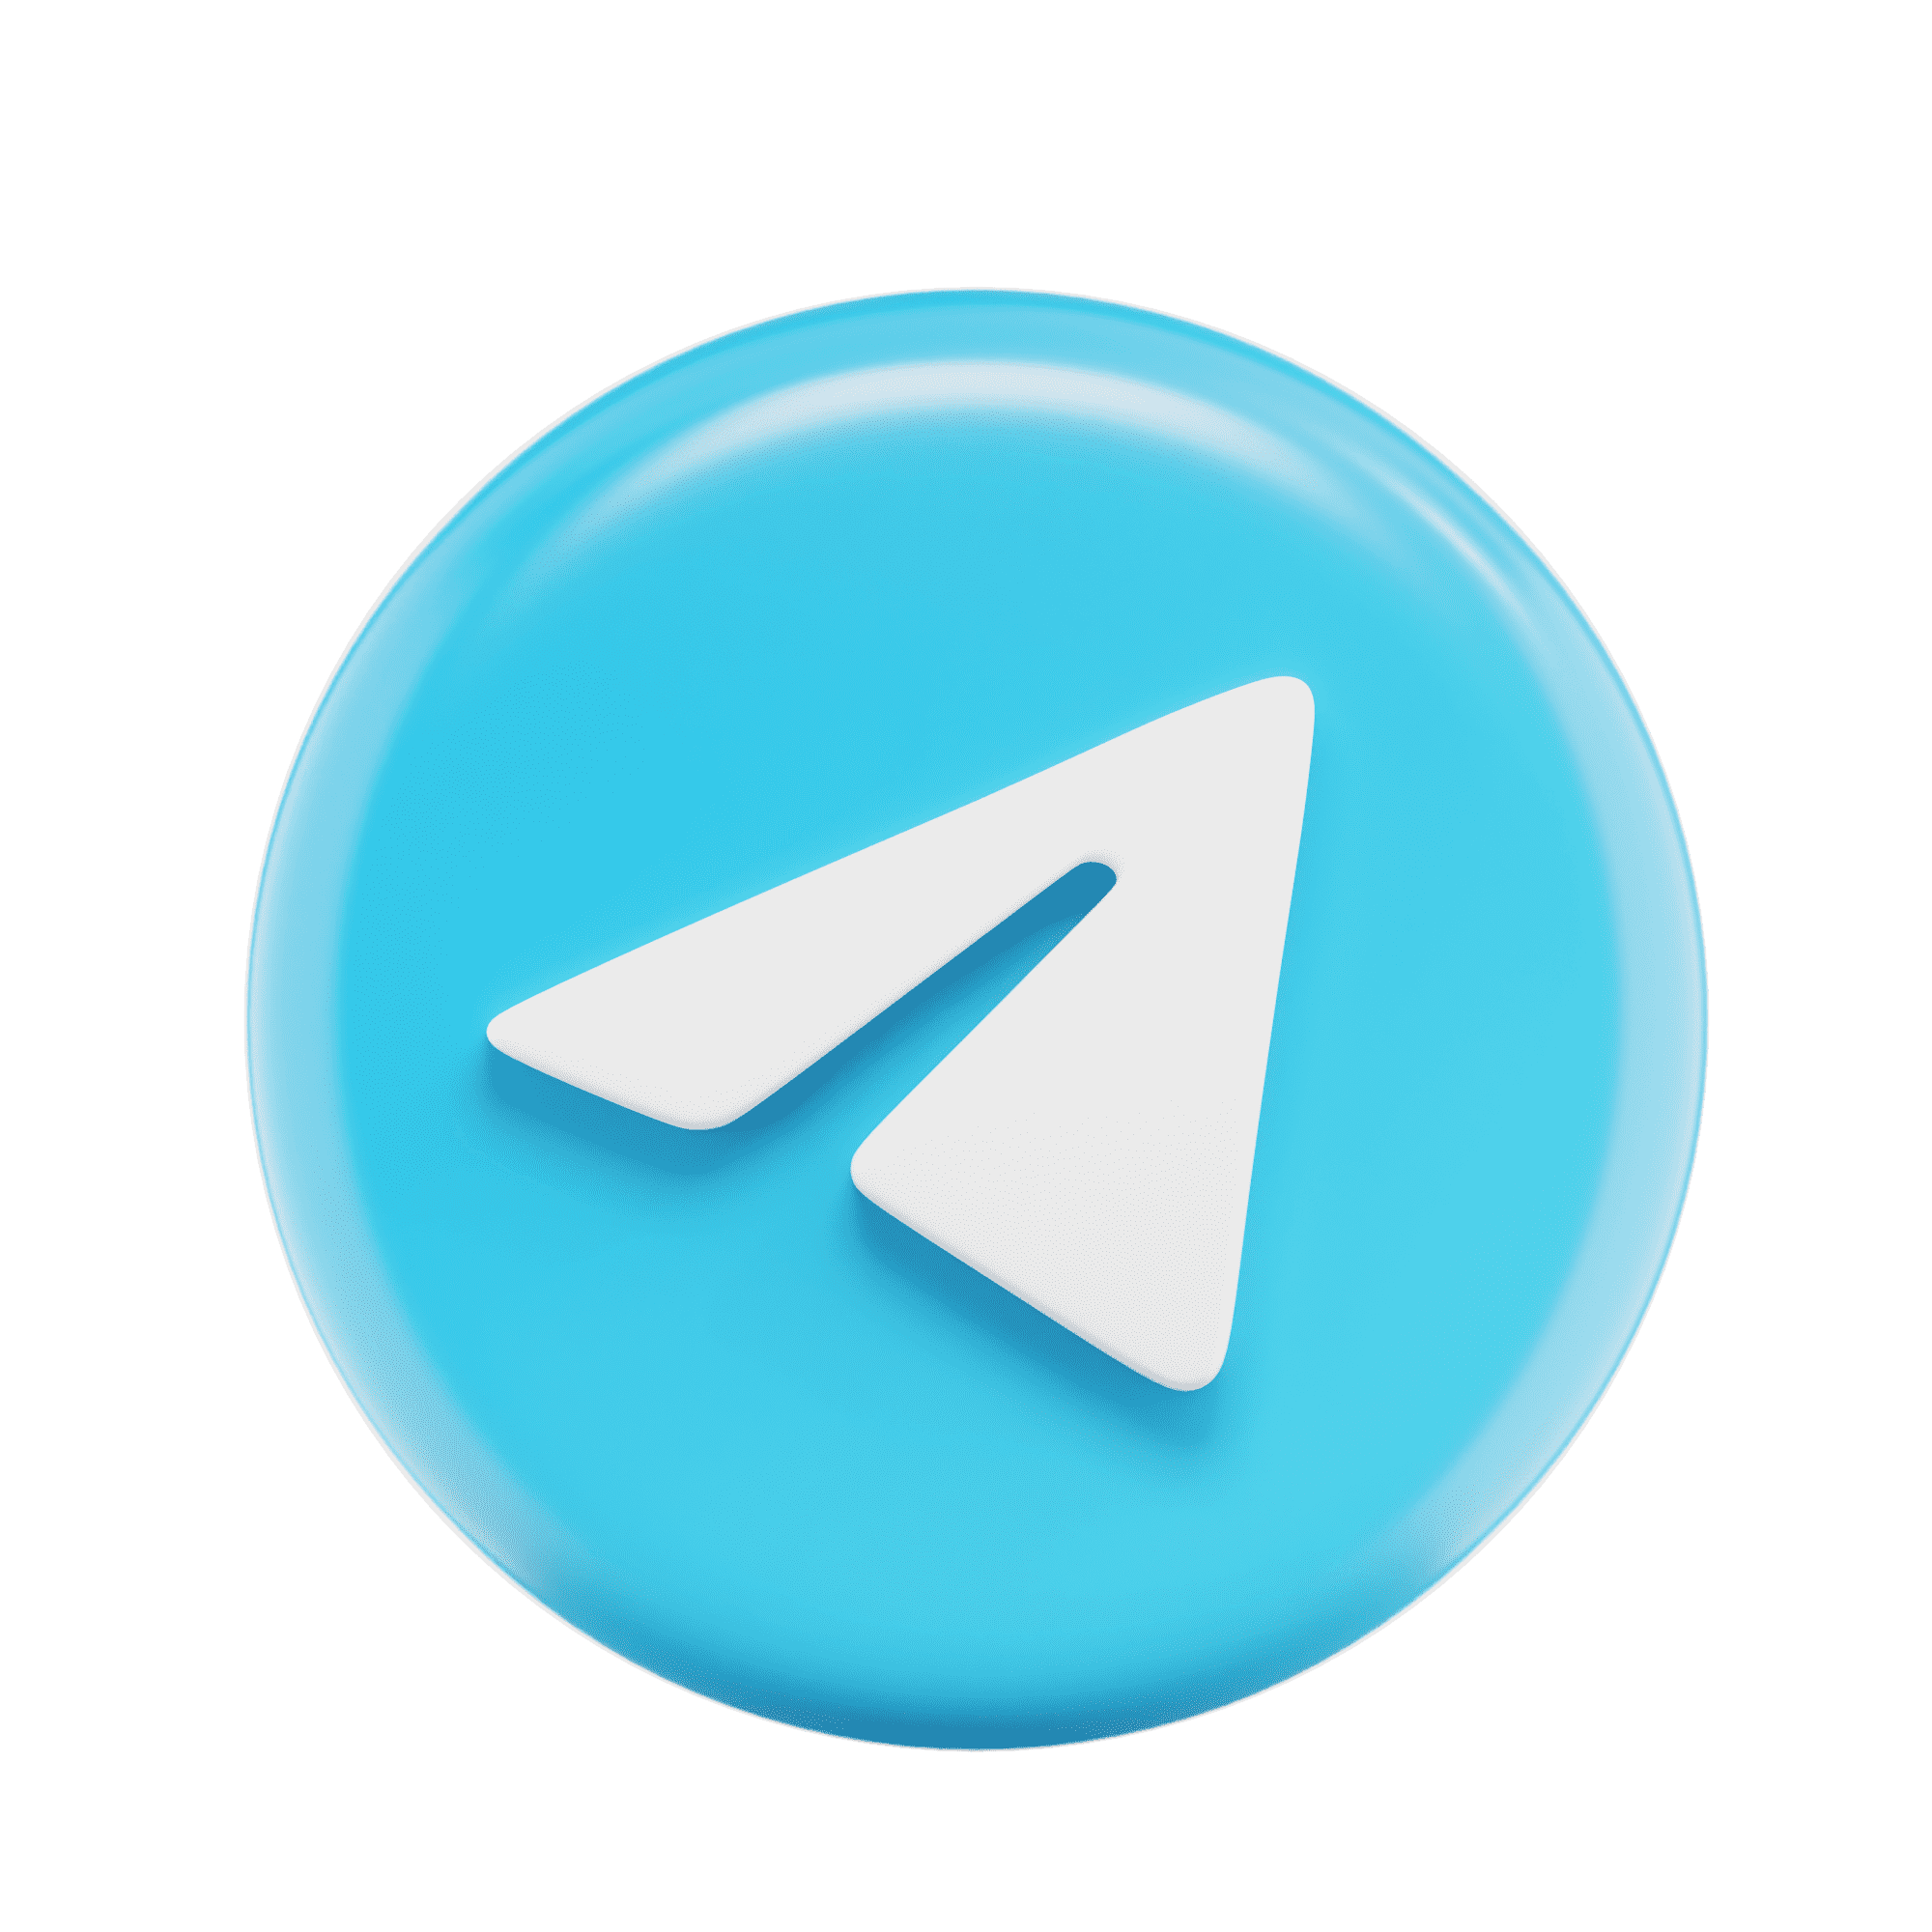 دانلود آیکون Telegram بدون پس زمینه با طراحی جالب